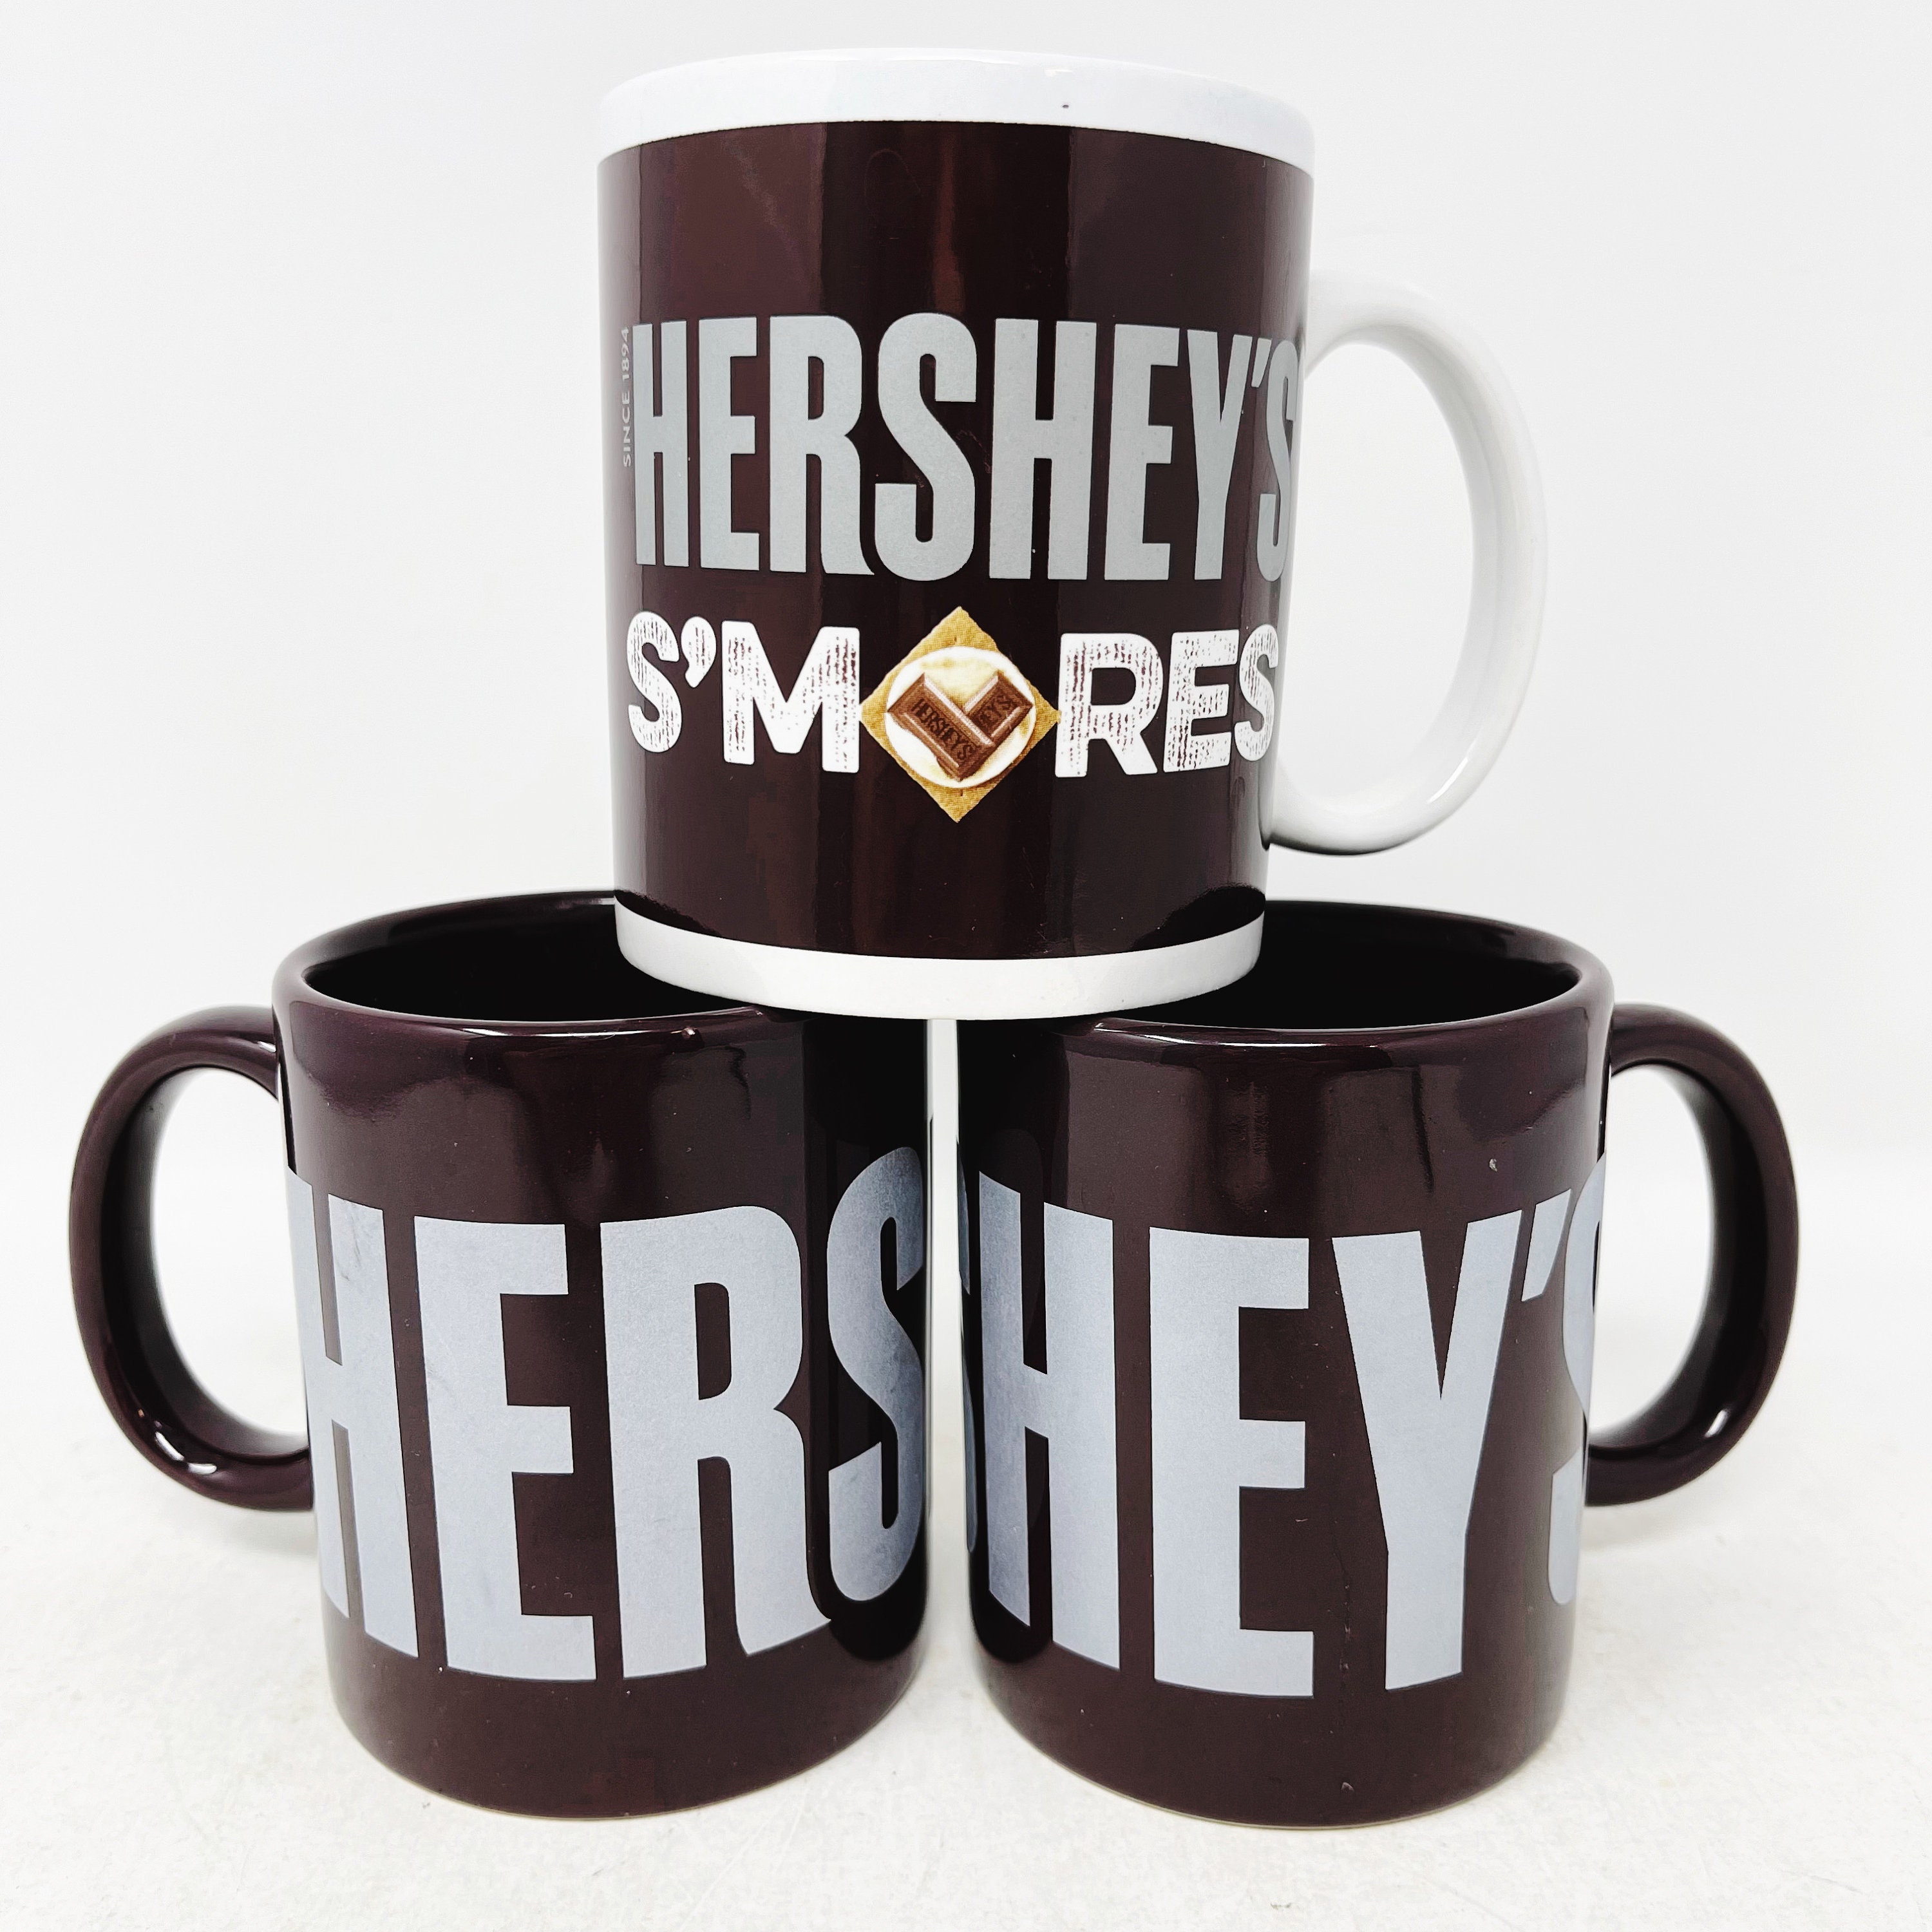 (2) Hershey's Chocolate Coffee Cup Mug Large Vintage Style Christmas 32 oz.